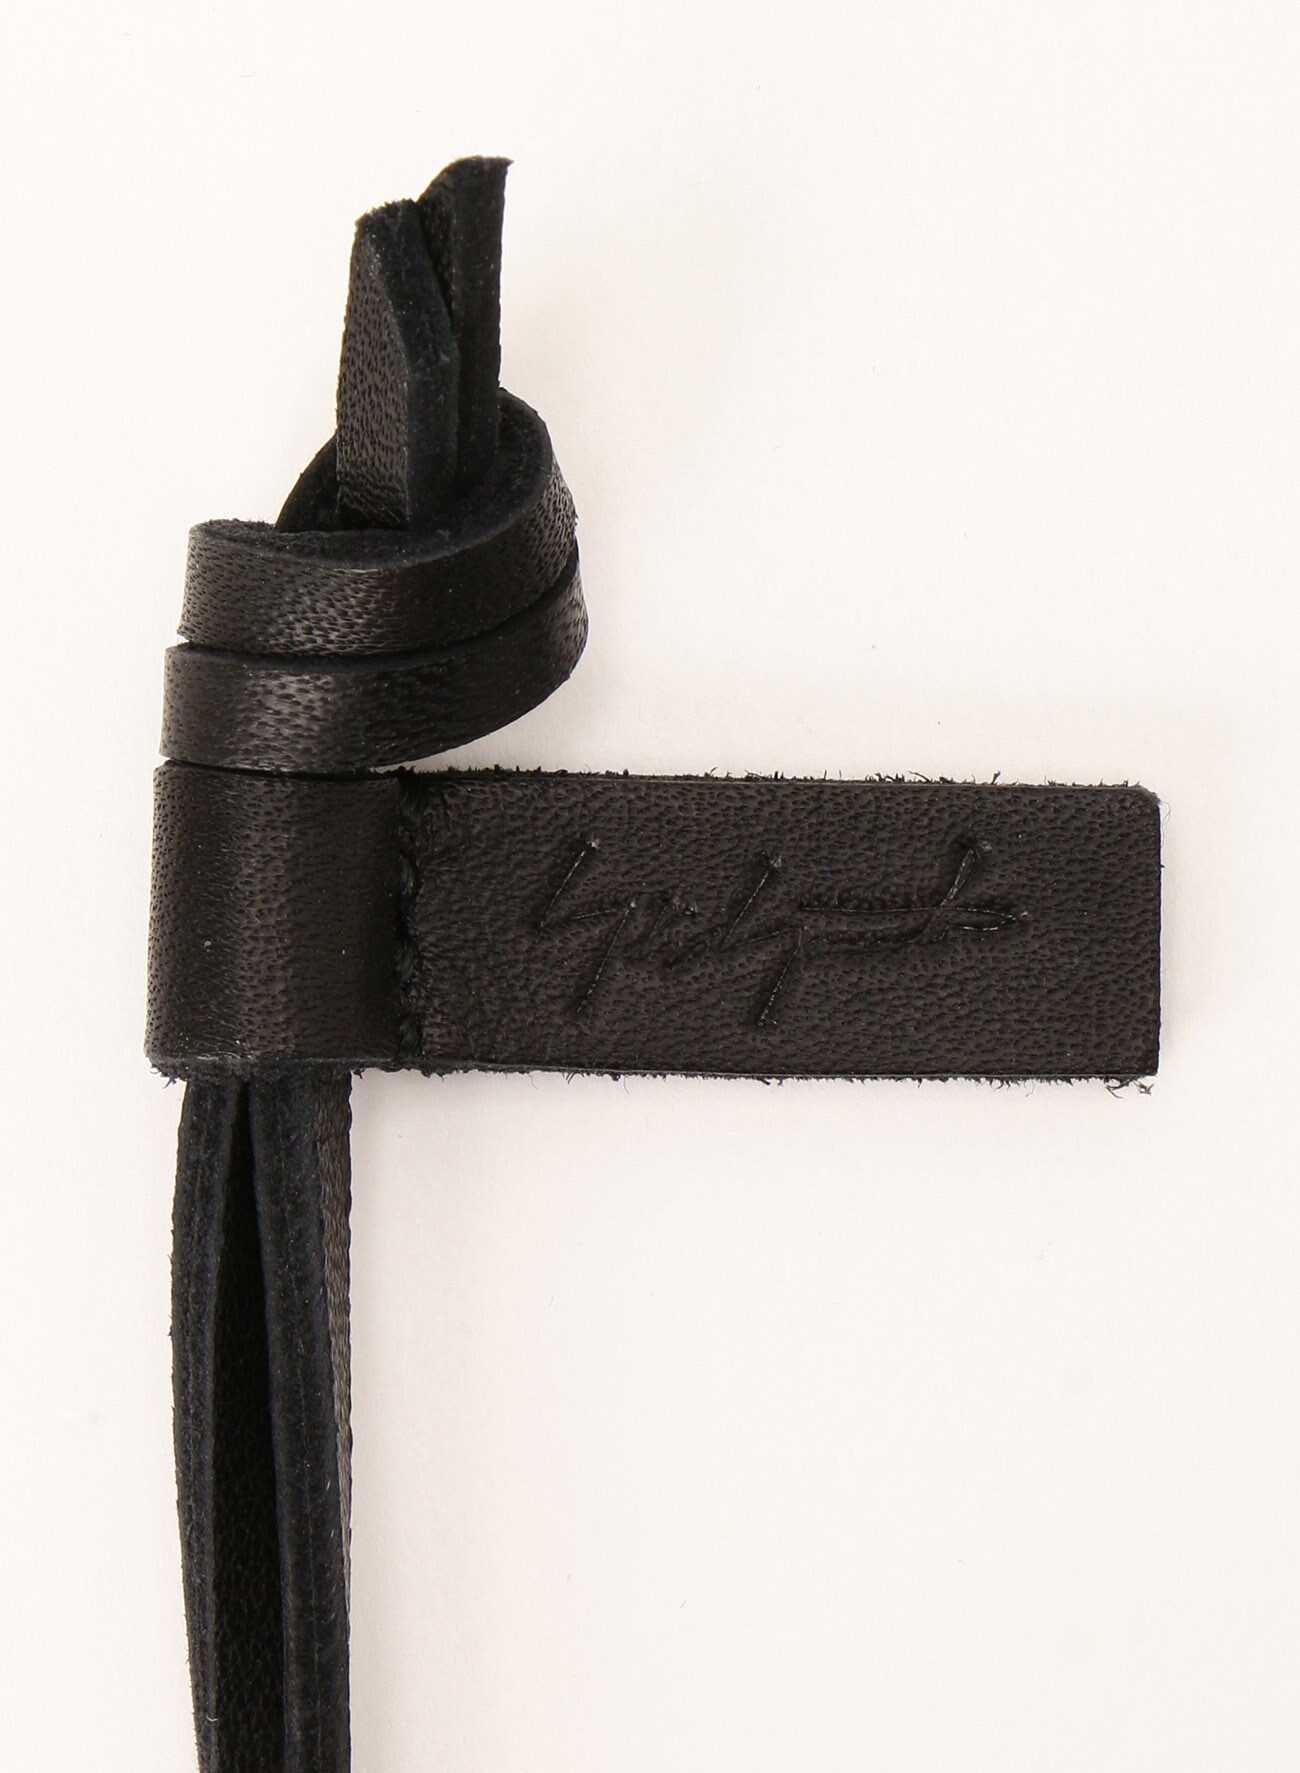 Zipper pass holder